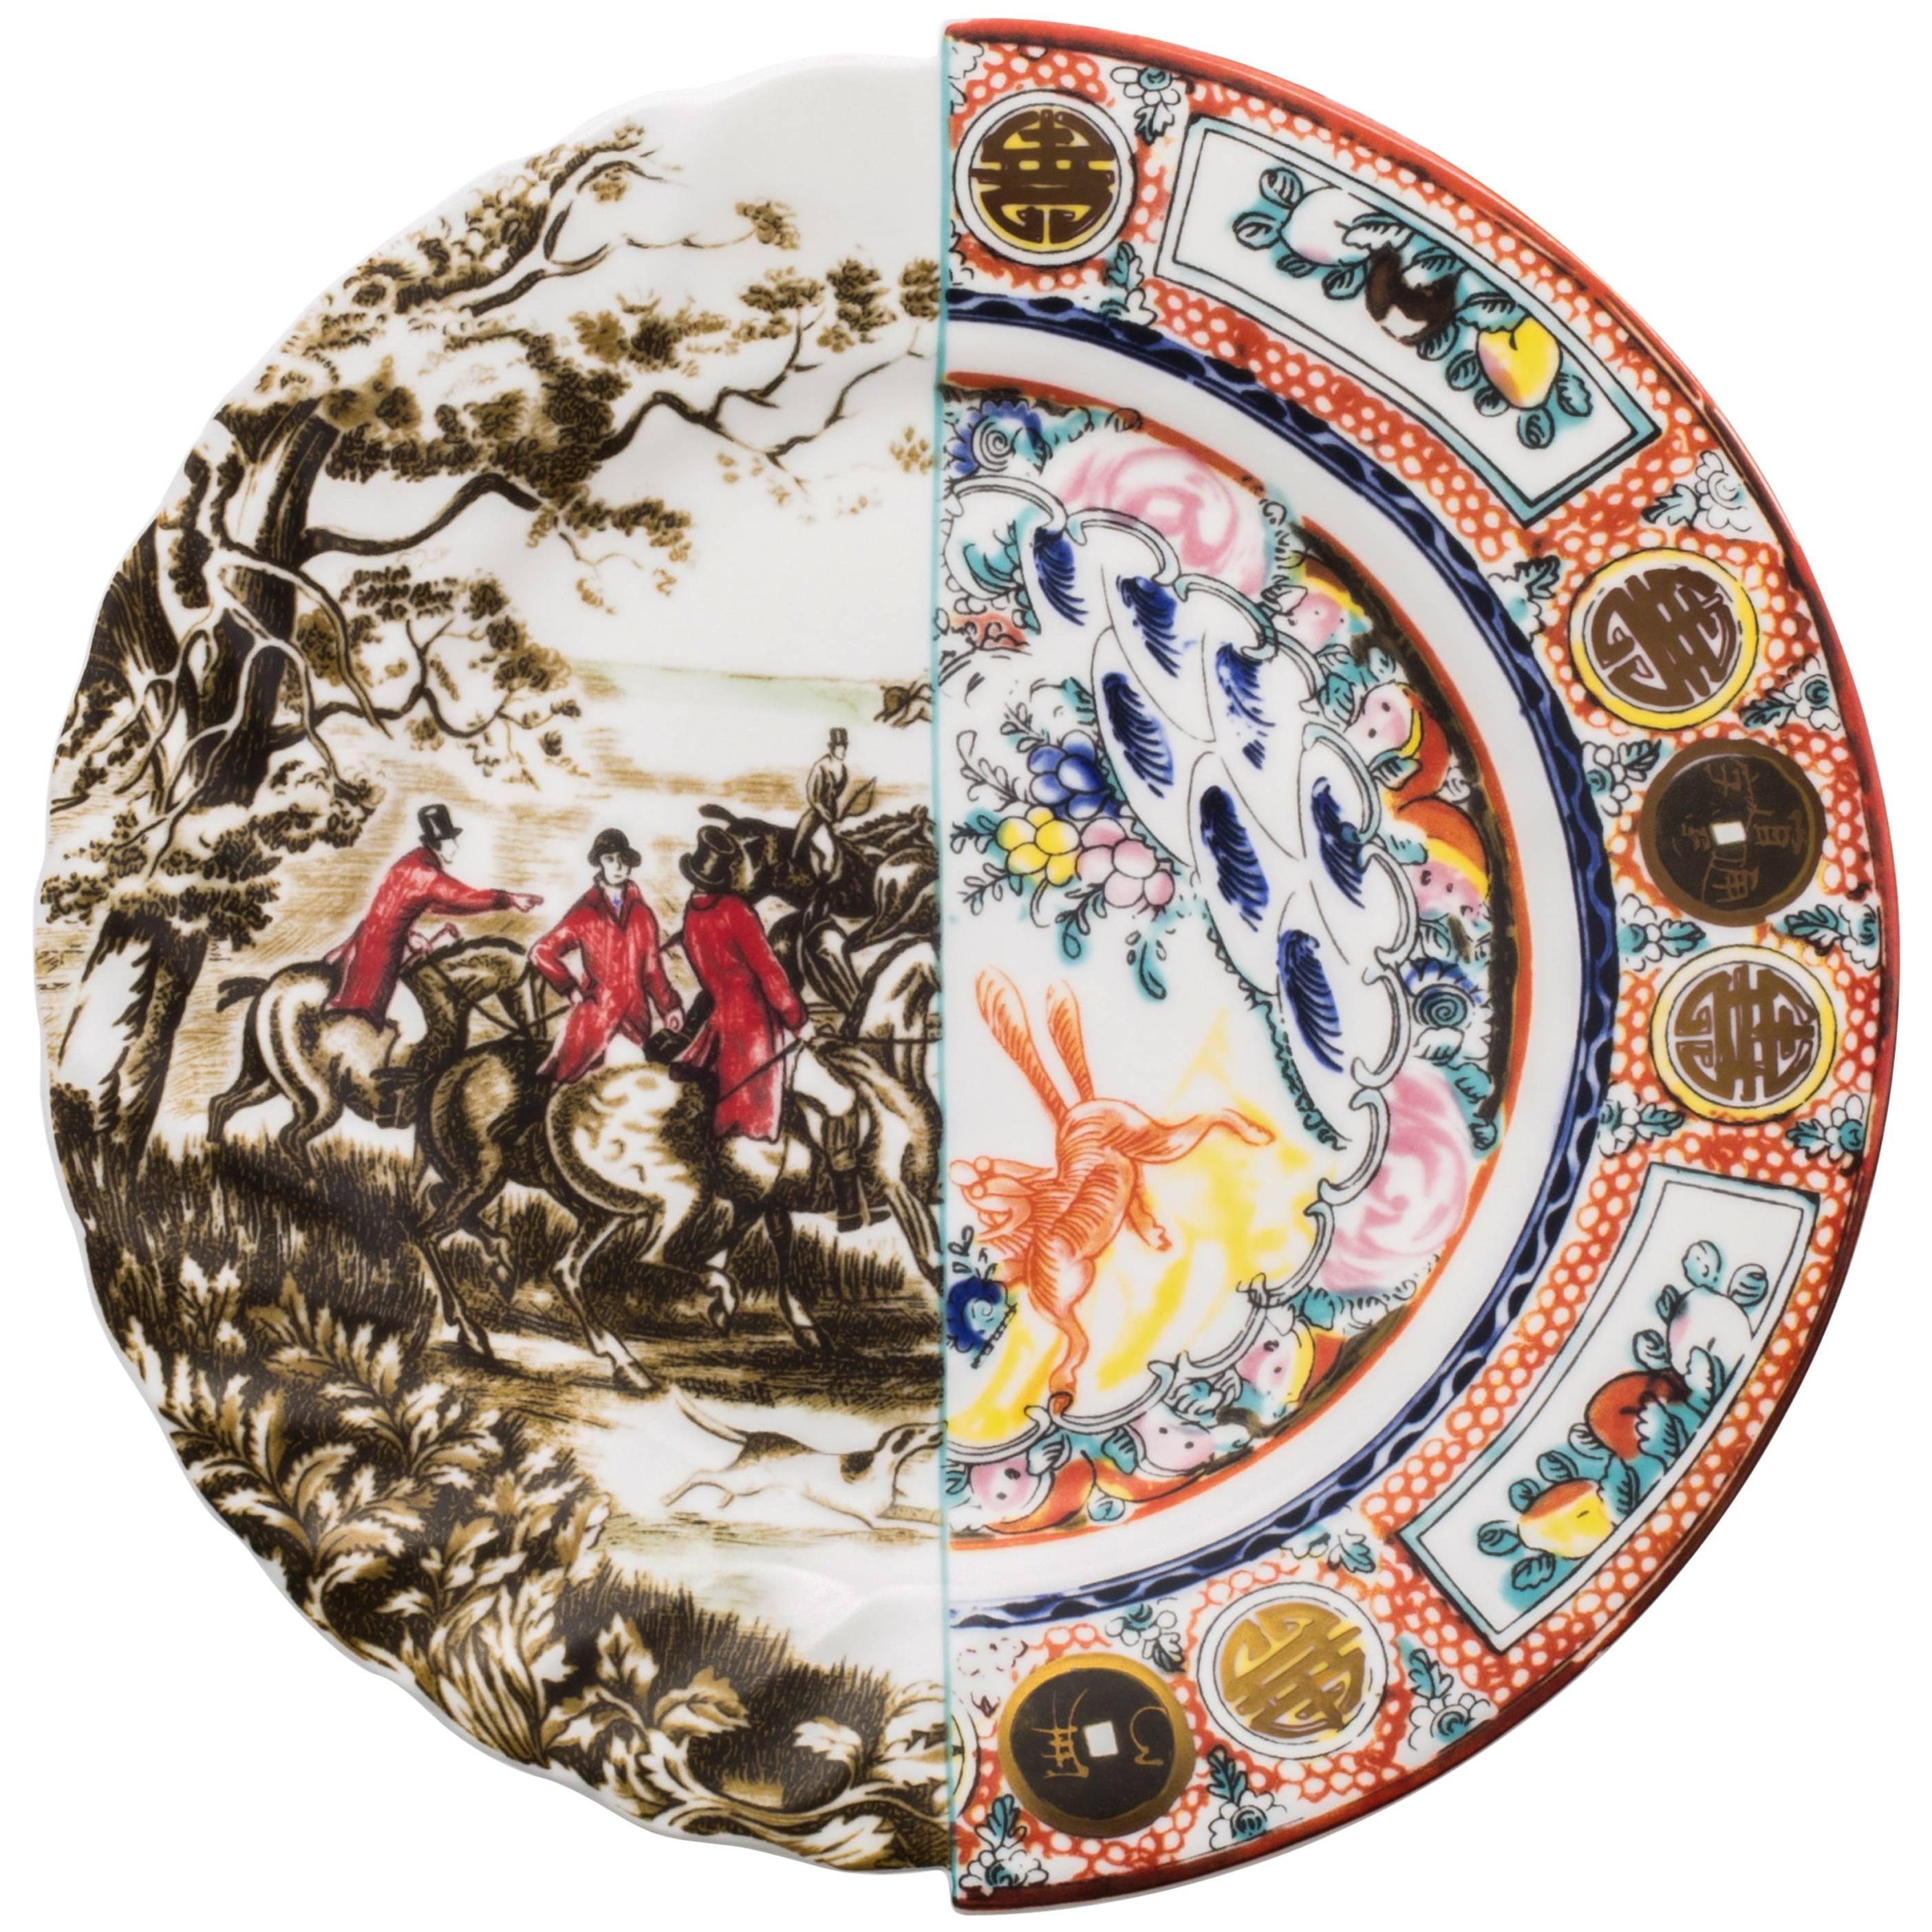 Seletti "Hybrid-Eusapia" Dinner Plate in Porcelain For Sale